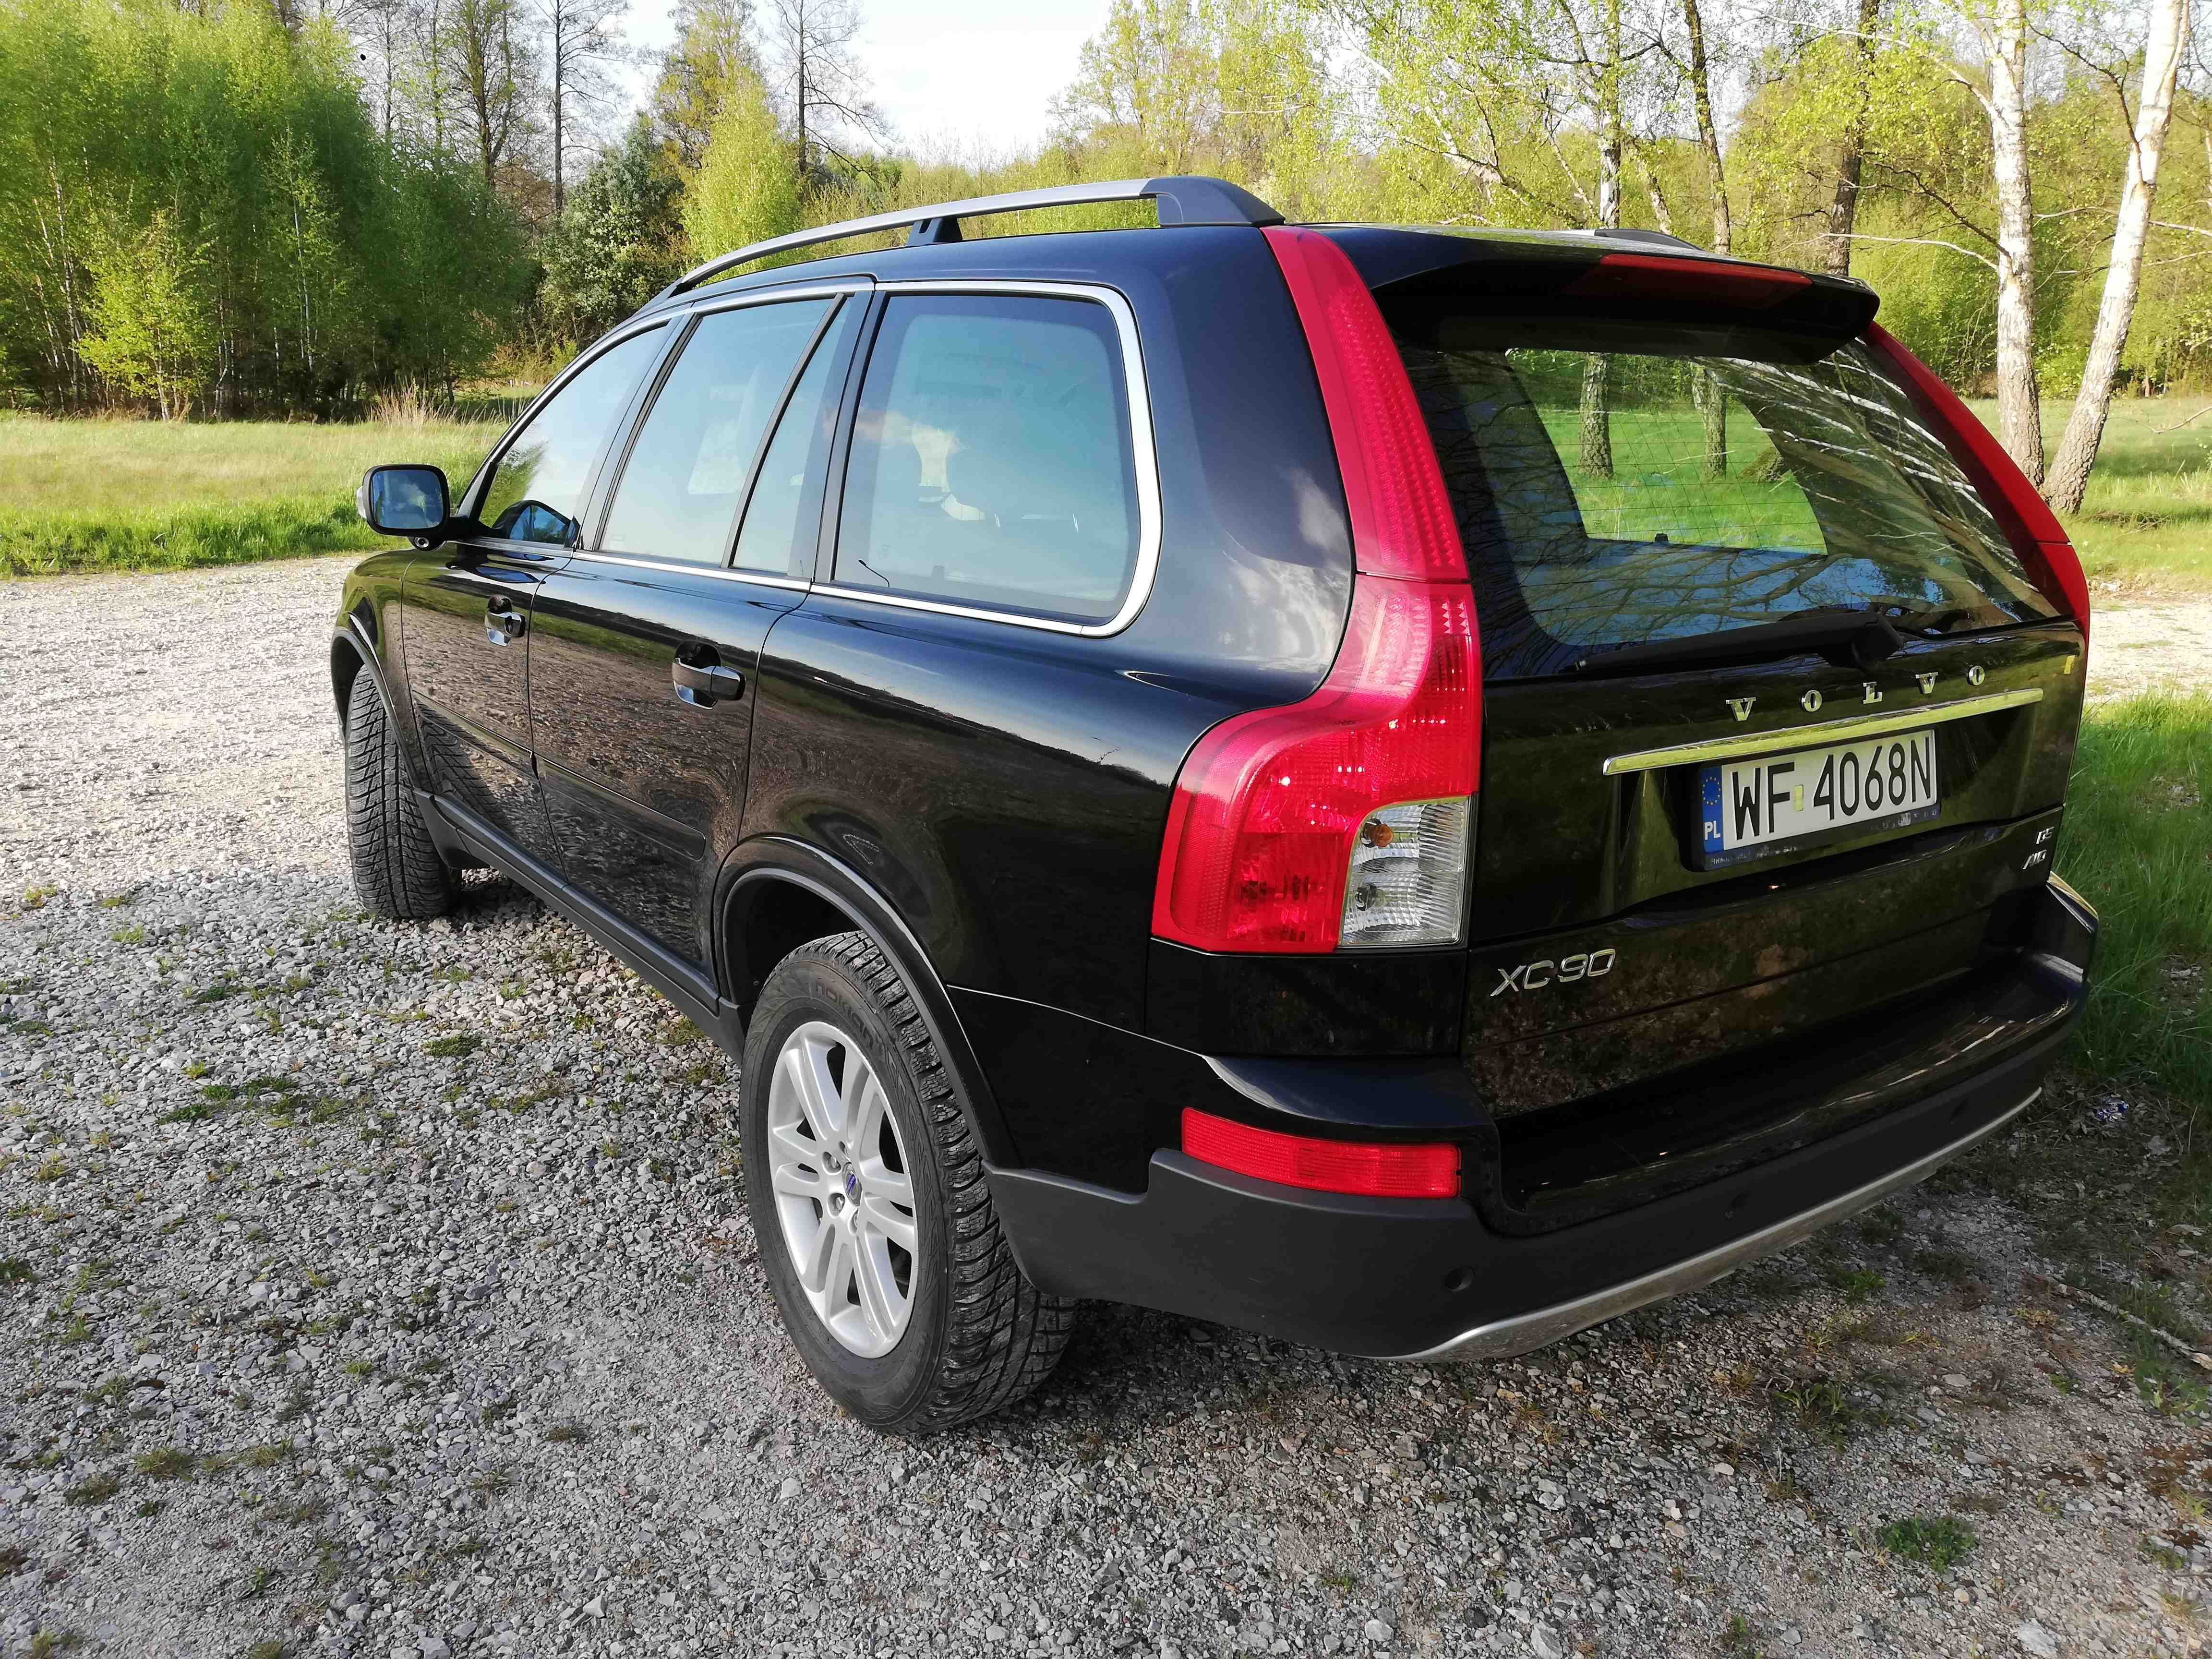 Volvo XC90 salon Polska, faktura vat 23% cena netto 36500